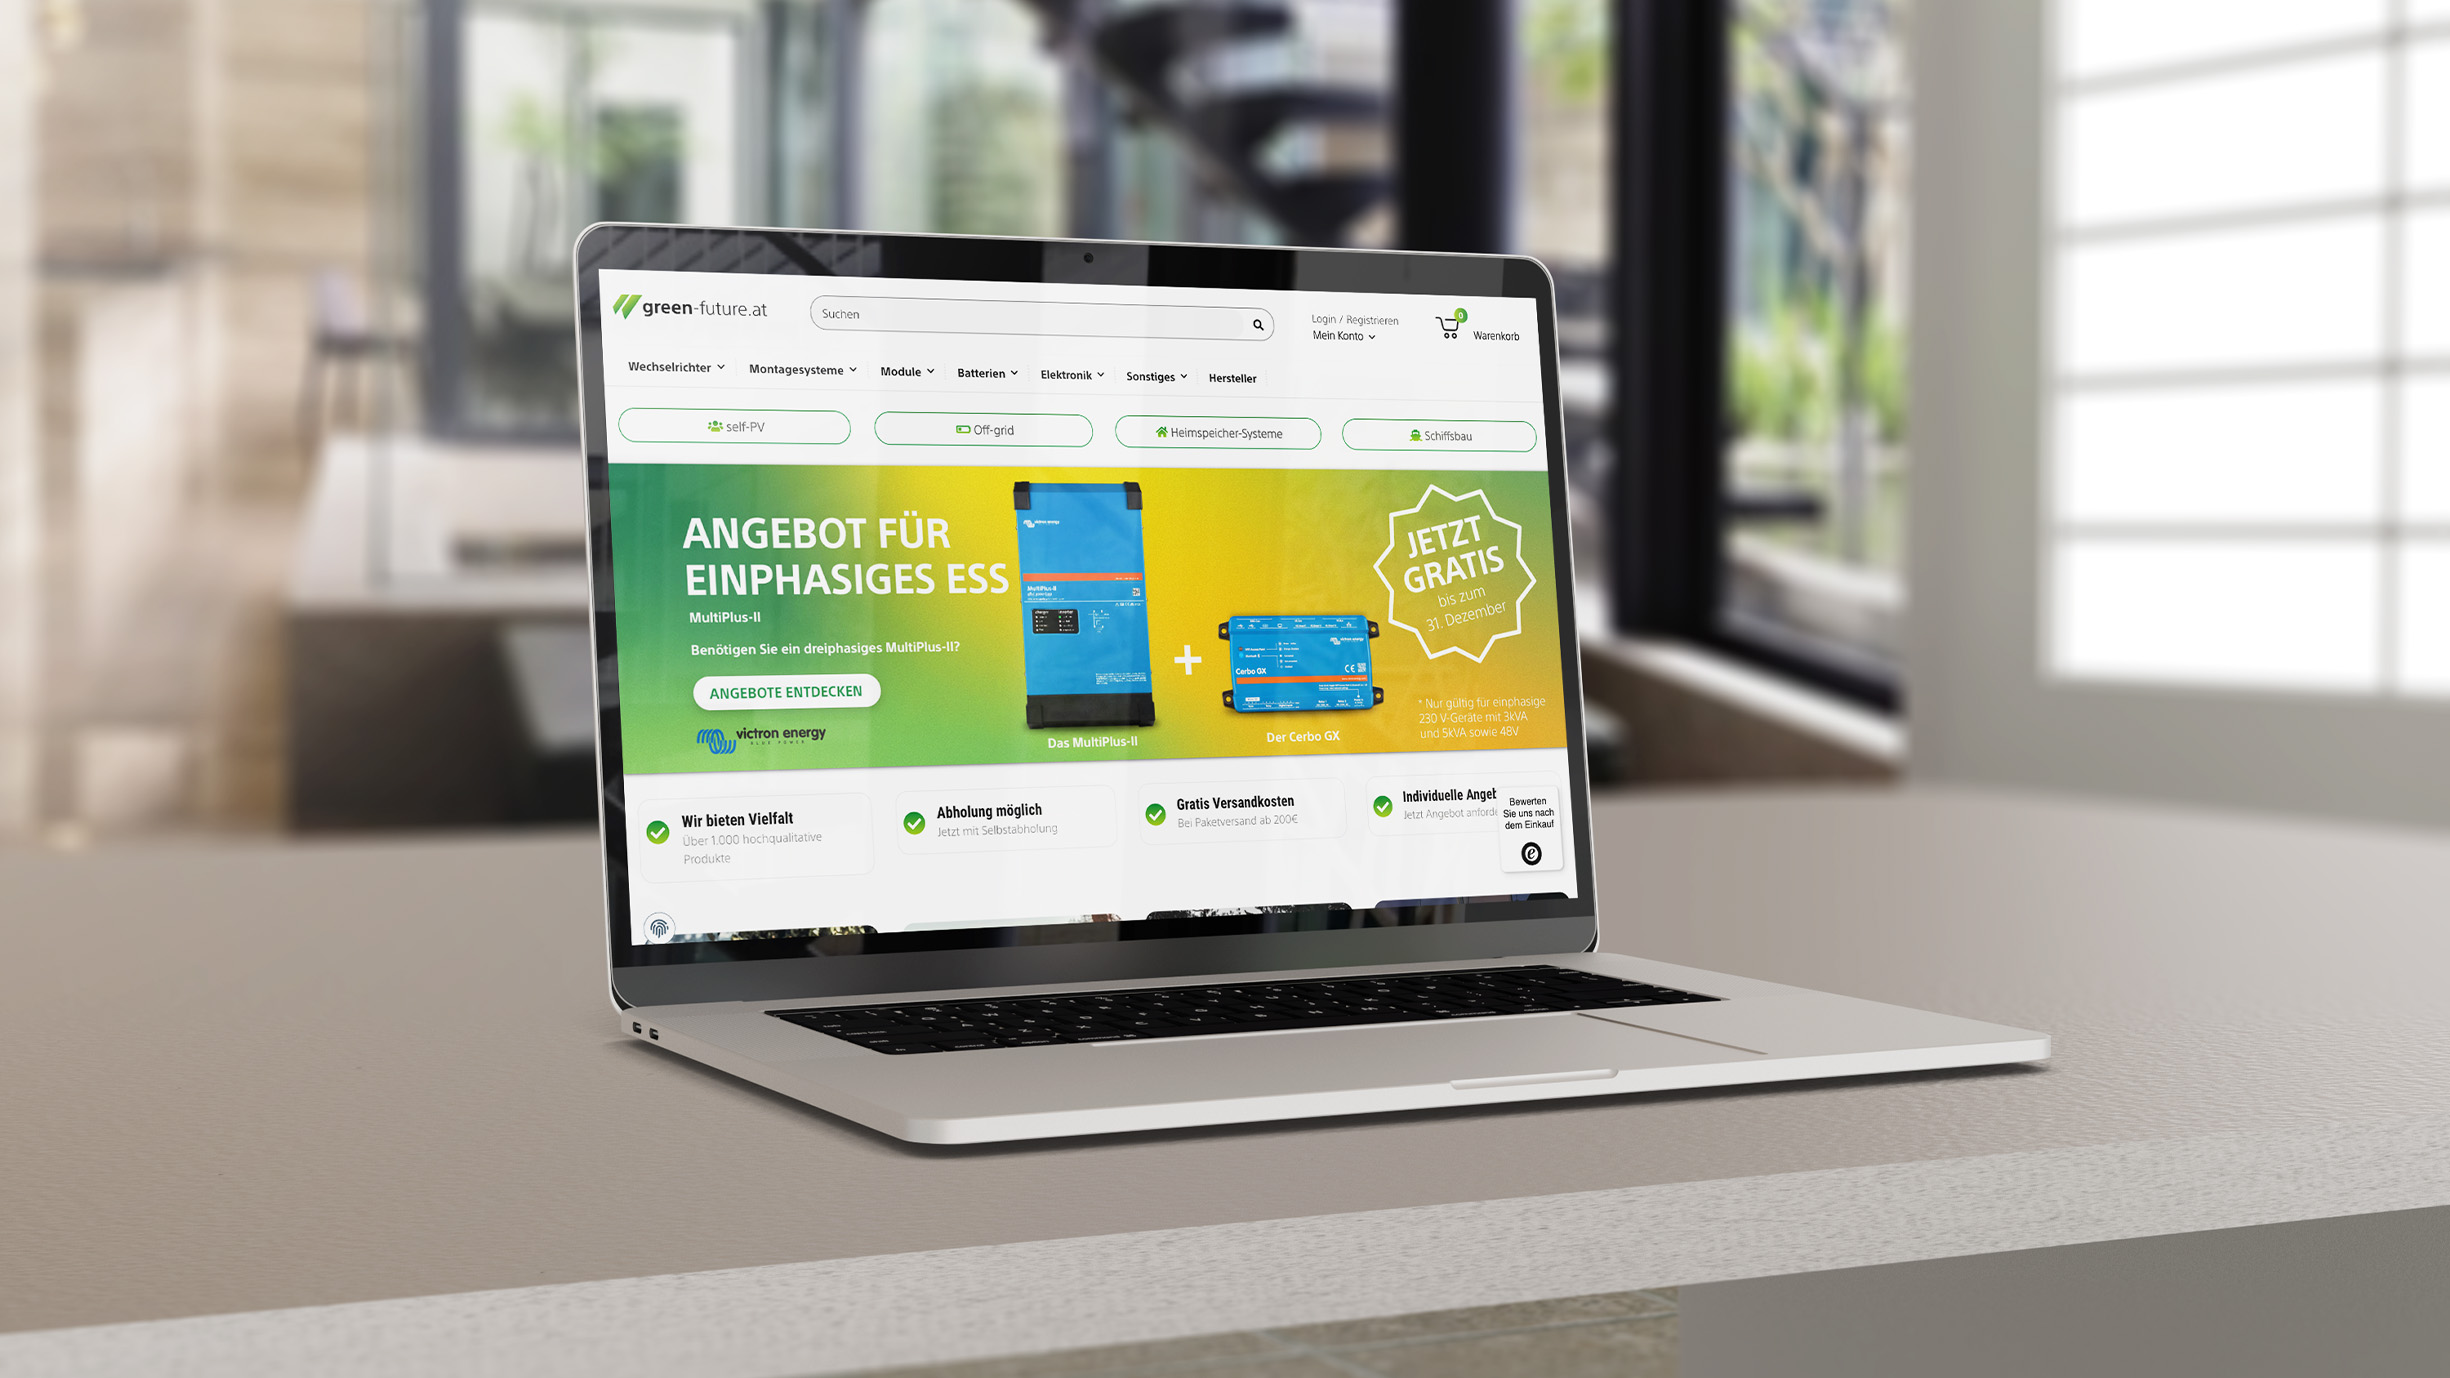 Macbook Auf Tisch Mit Green Futureat Website Geöffnet